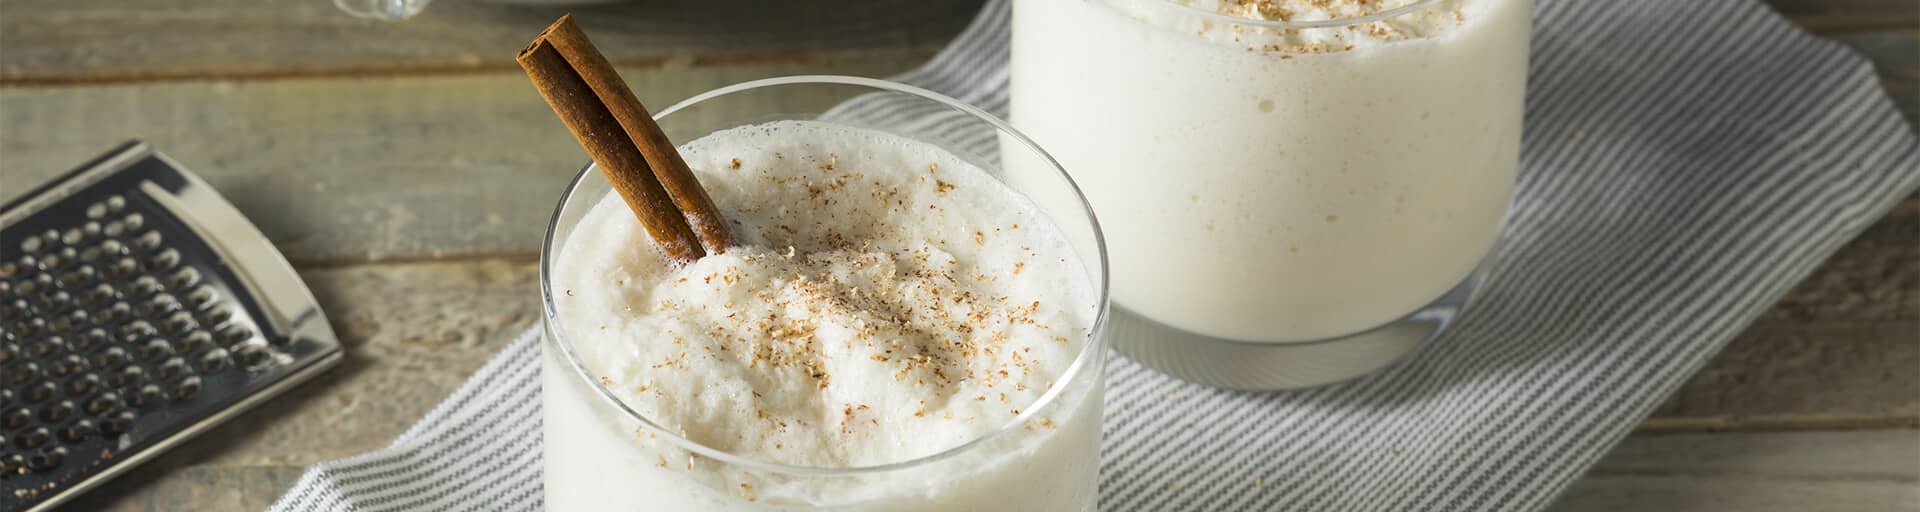 Молочный коктейль “Вкусно и точка”: рецепт в домашних условиях